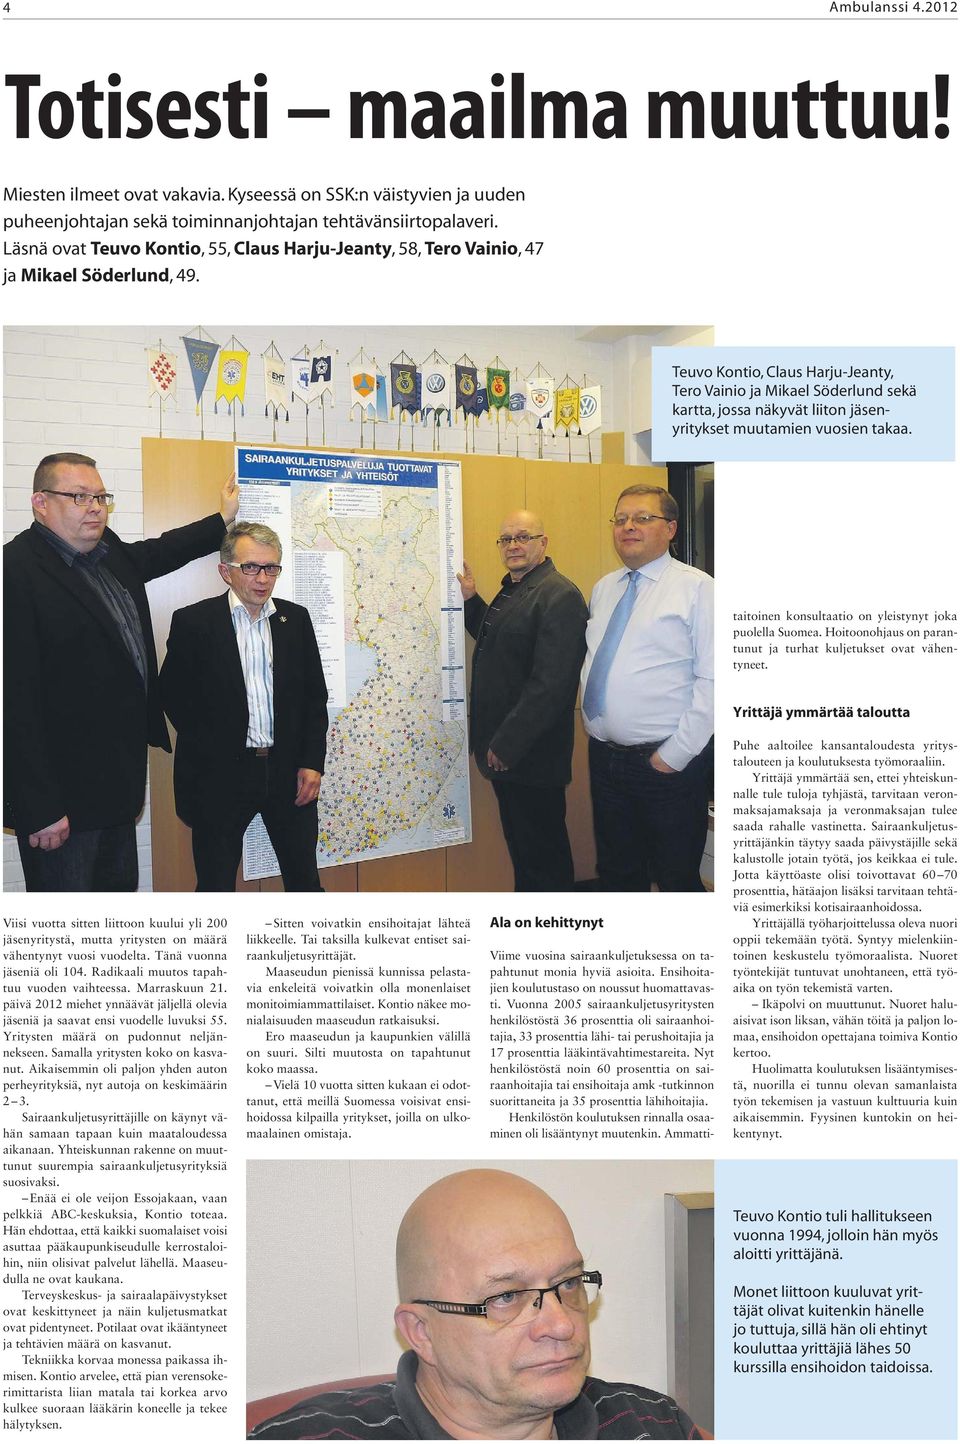 Teuvo Kontio, Claus Harju-Jeanty, Tero Vainio ja Mikael Söderlund sekä kartta, jossa näkyvät liiton jäsenyritykset muutamien vuosien takaa. taitoinen konsultaatio on yleistynyt joka puolella Suomea.